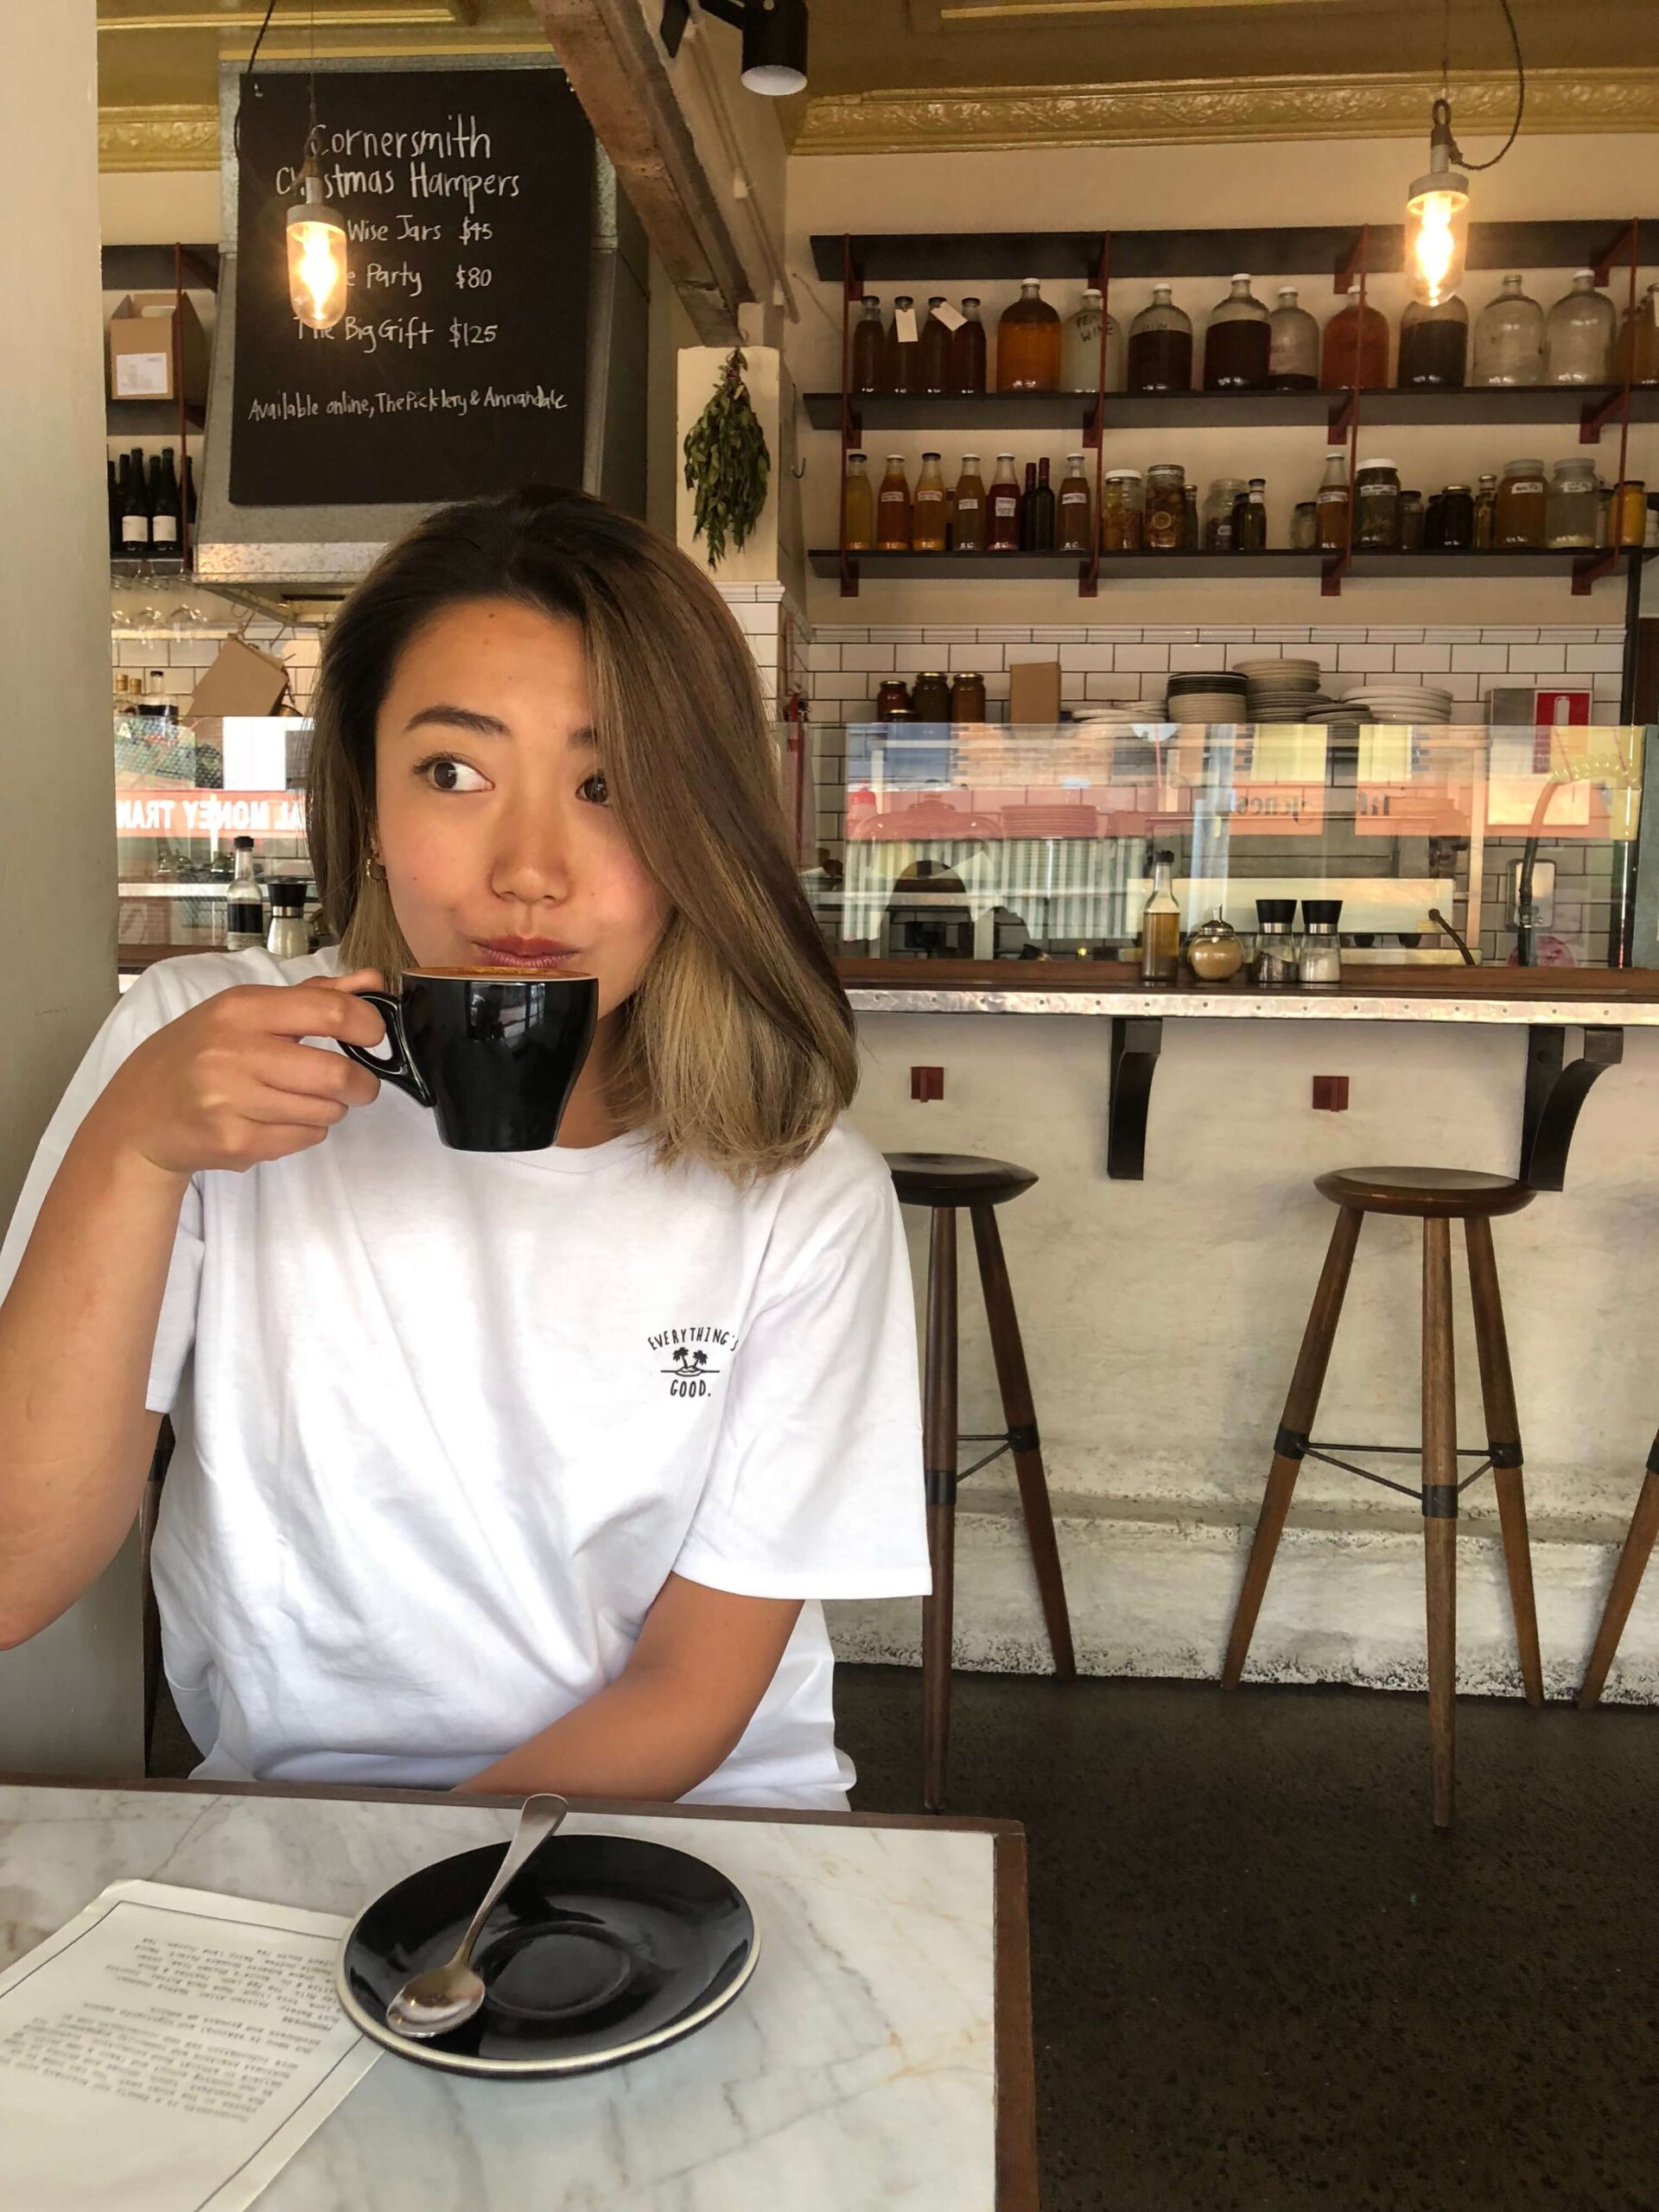 シドニーのカフェ【Cornersmith】でコーヒーを飲む筆者の様子を撮影した写真